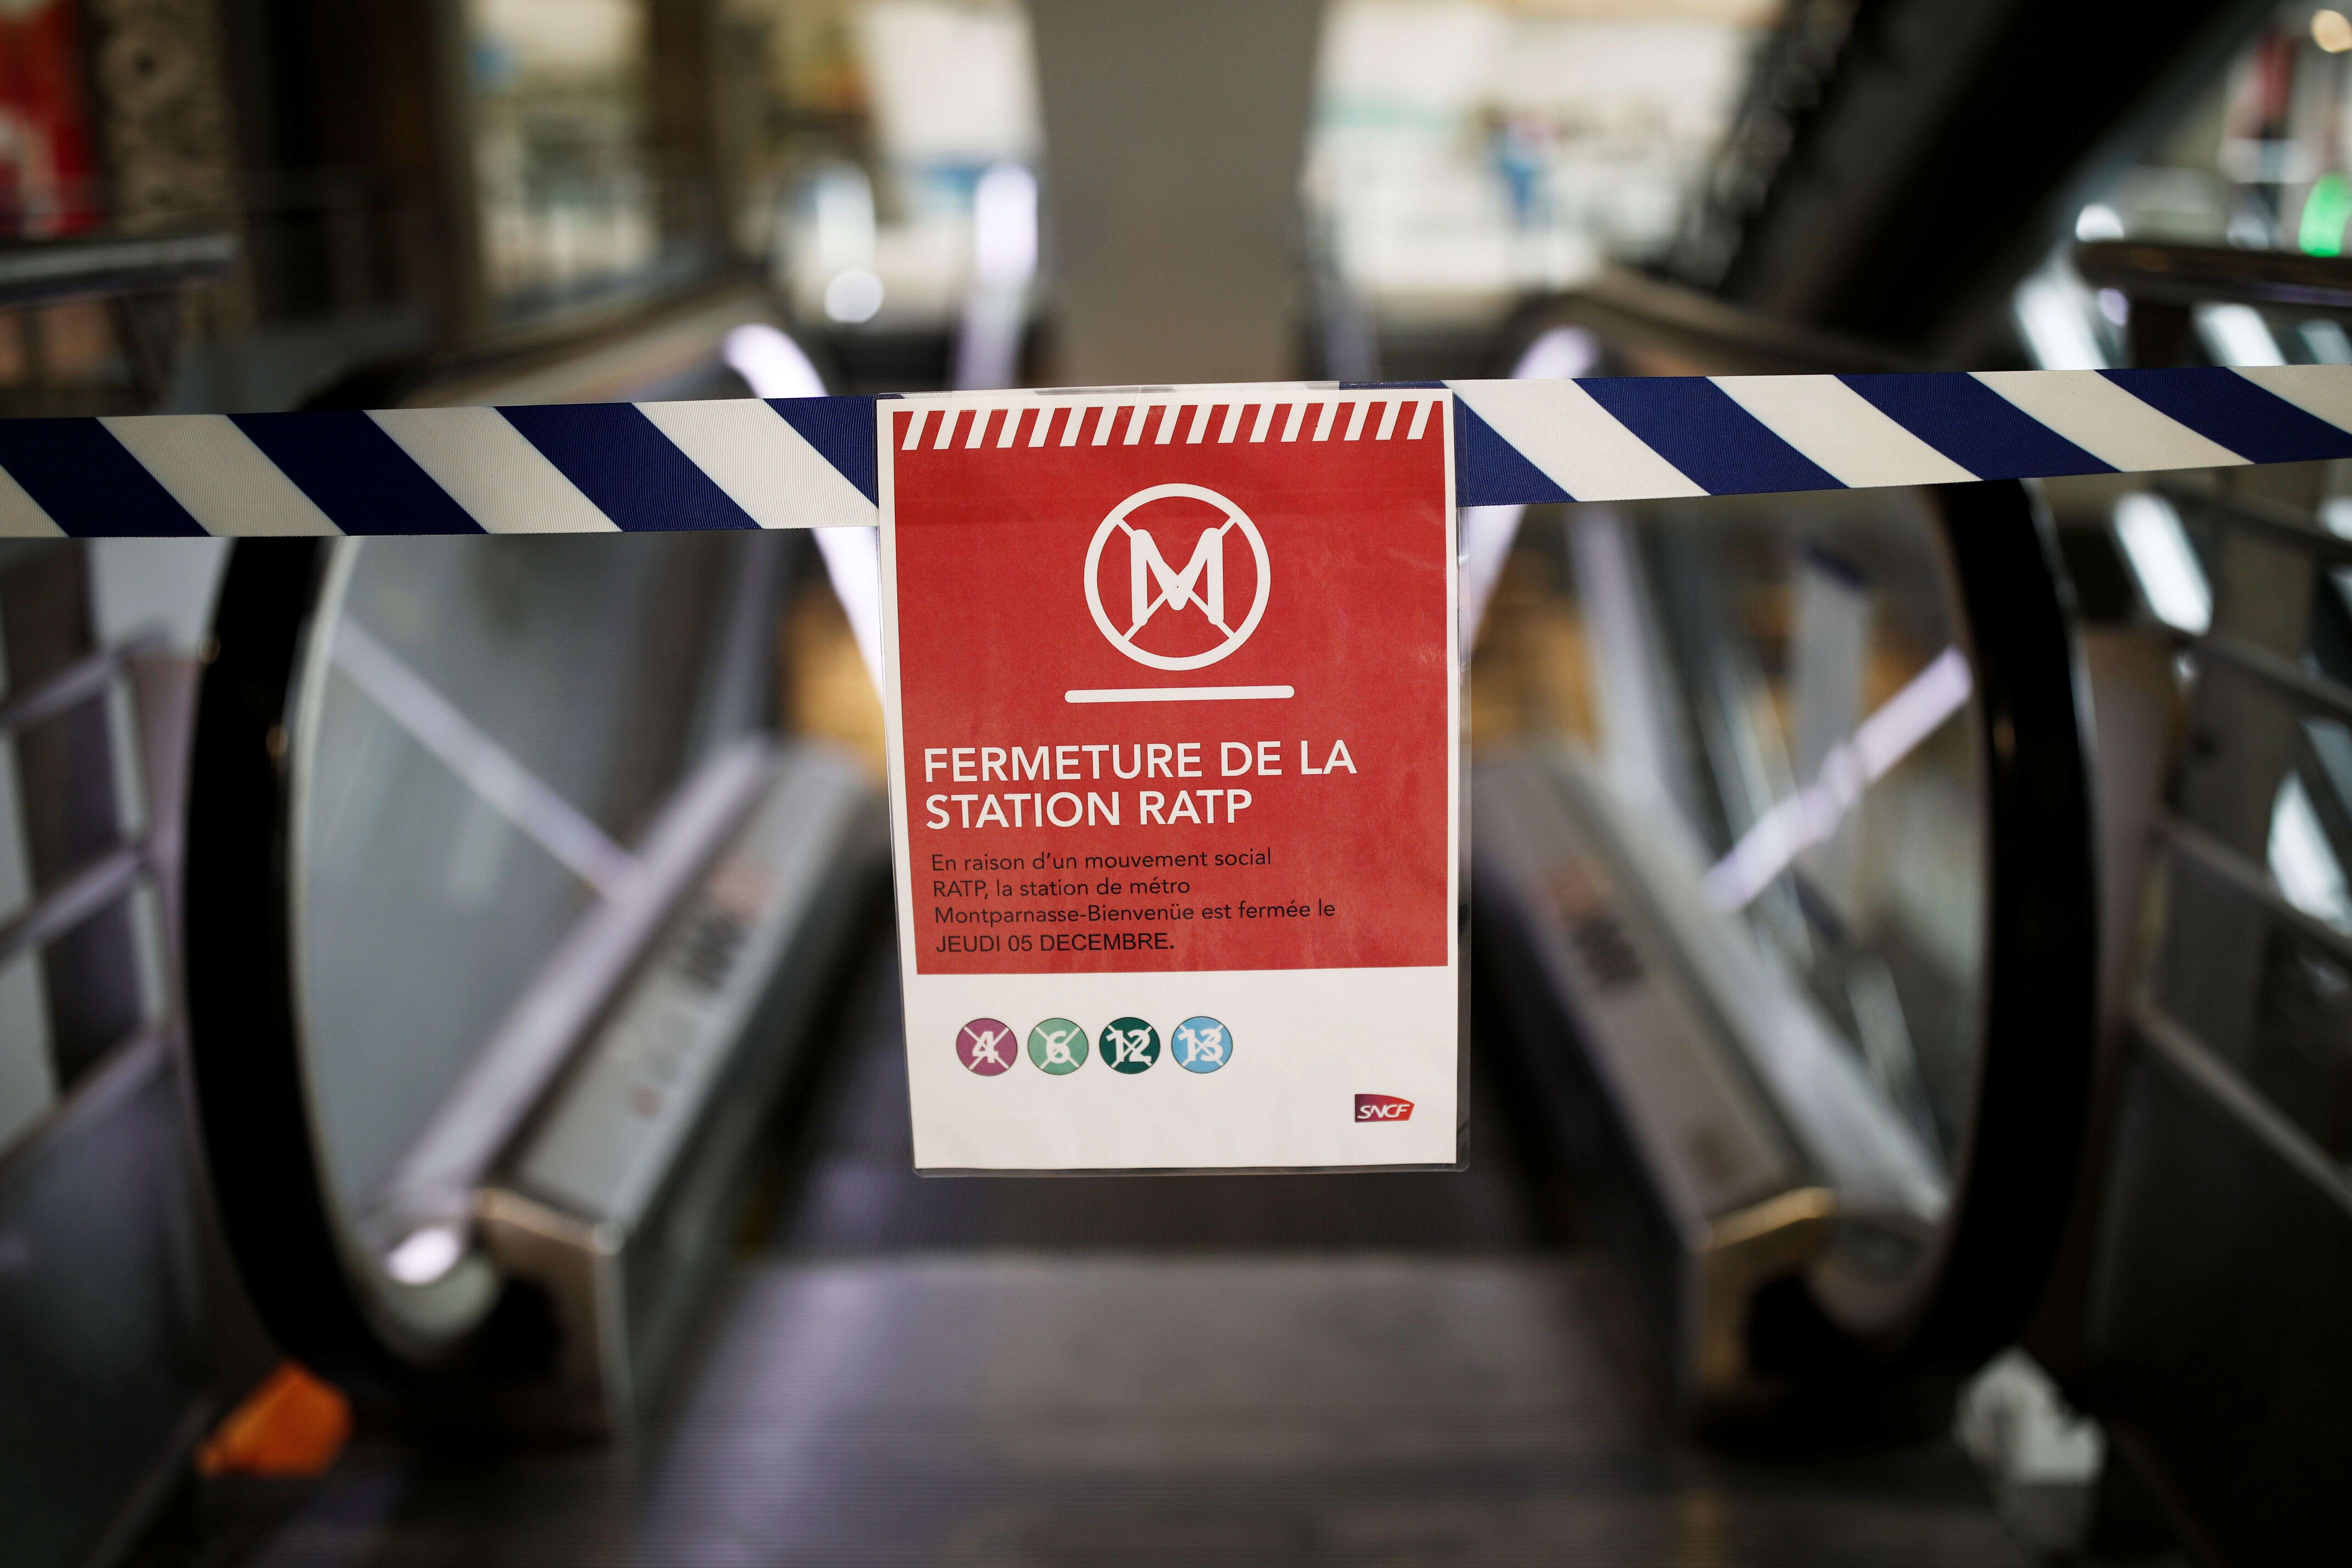 Après la grève RATP, un remboursement sera proposé aux voyageurs touchés par les lignes fermées comme sur cette photo gare Montparnasse.